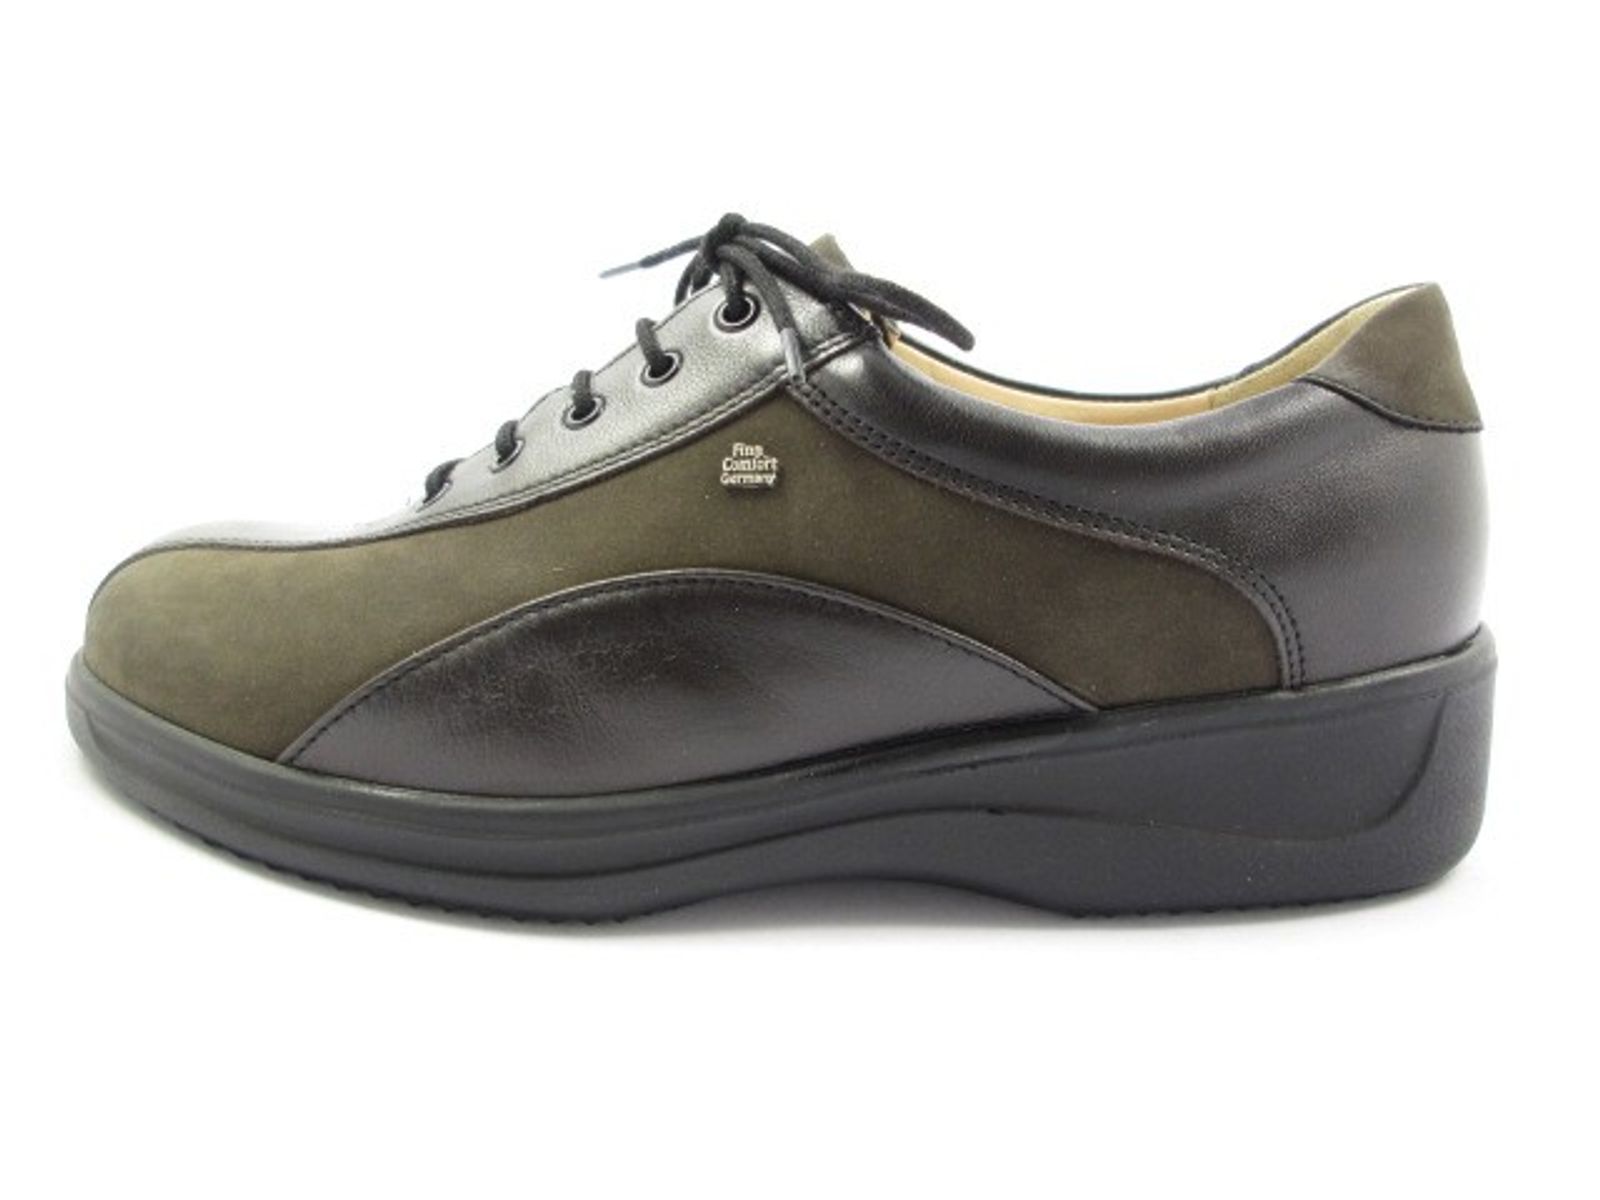 Schuh von Finn Comfort, 4½